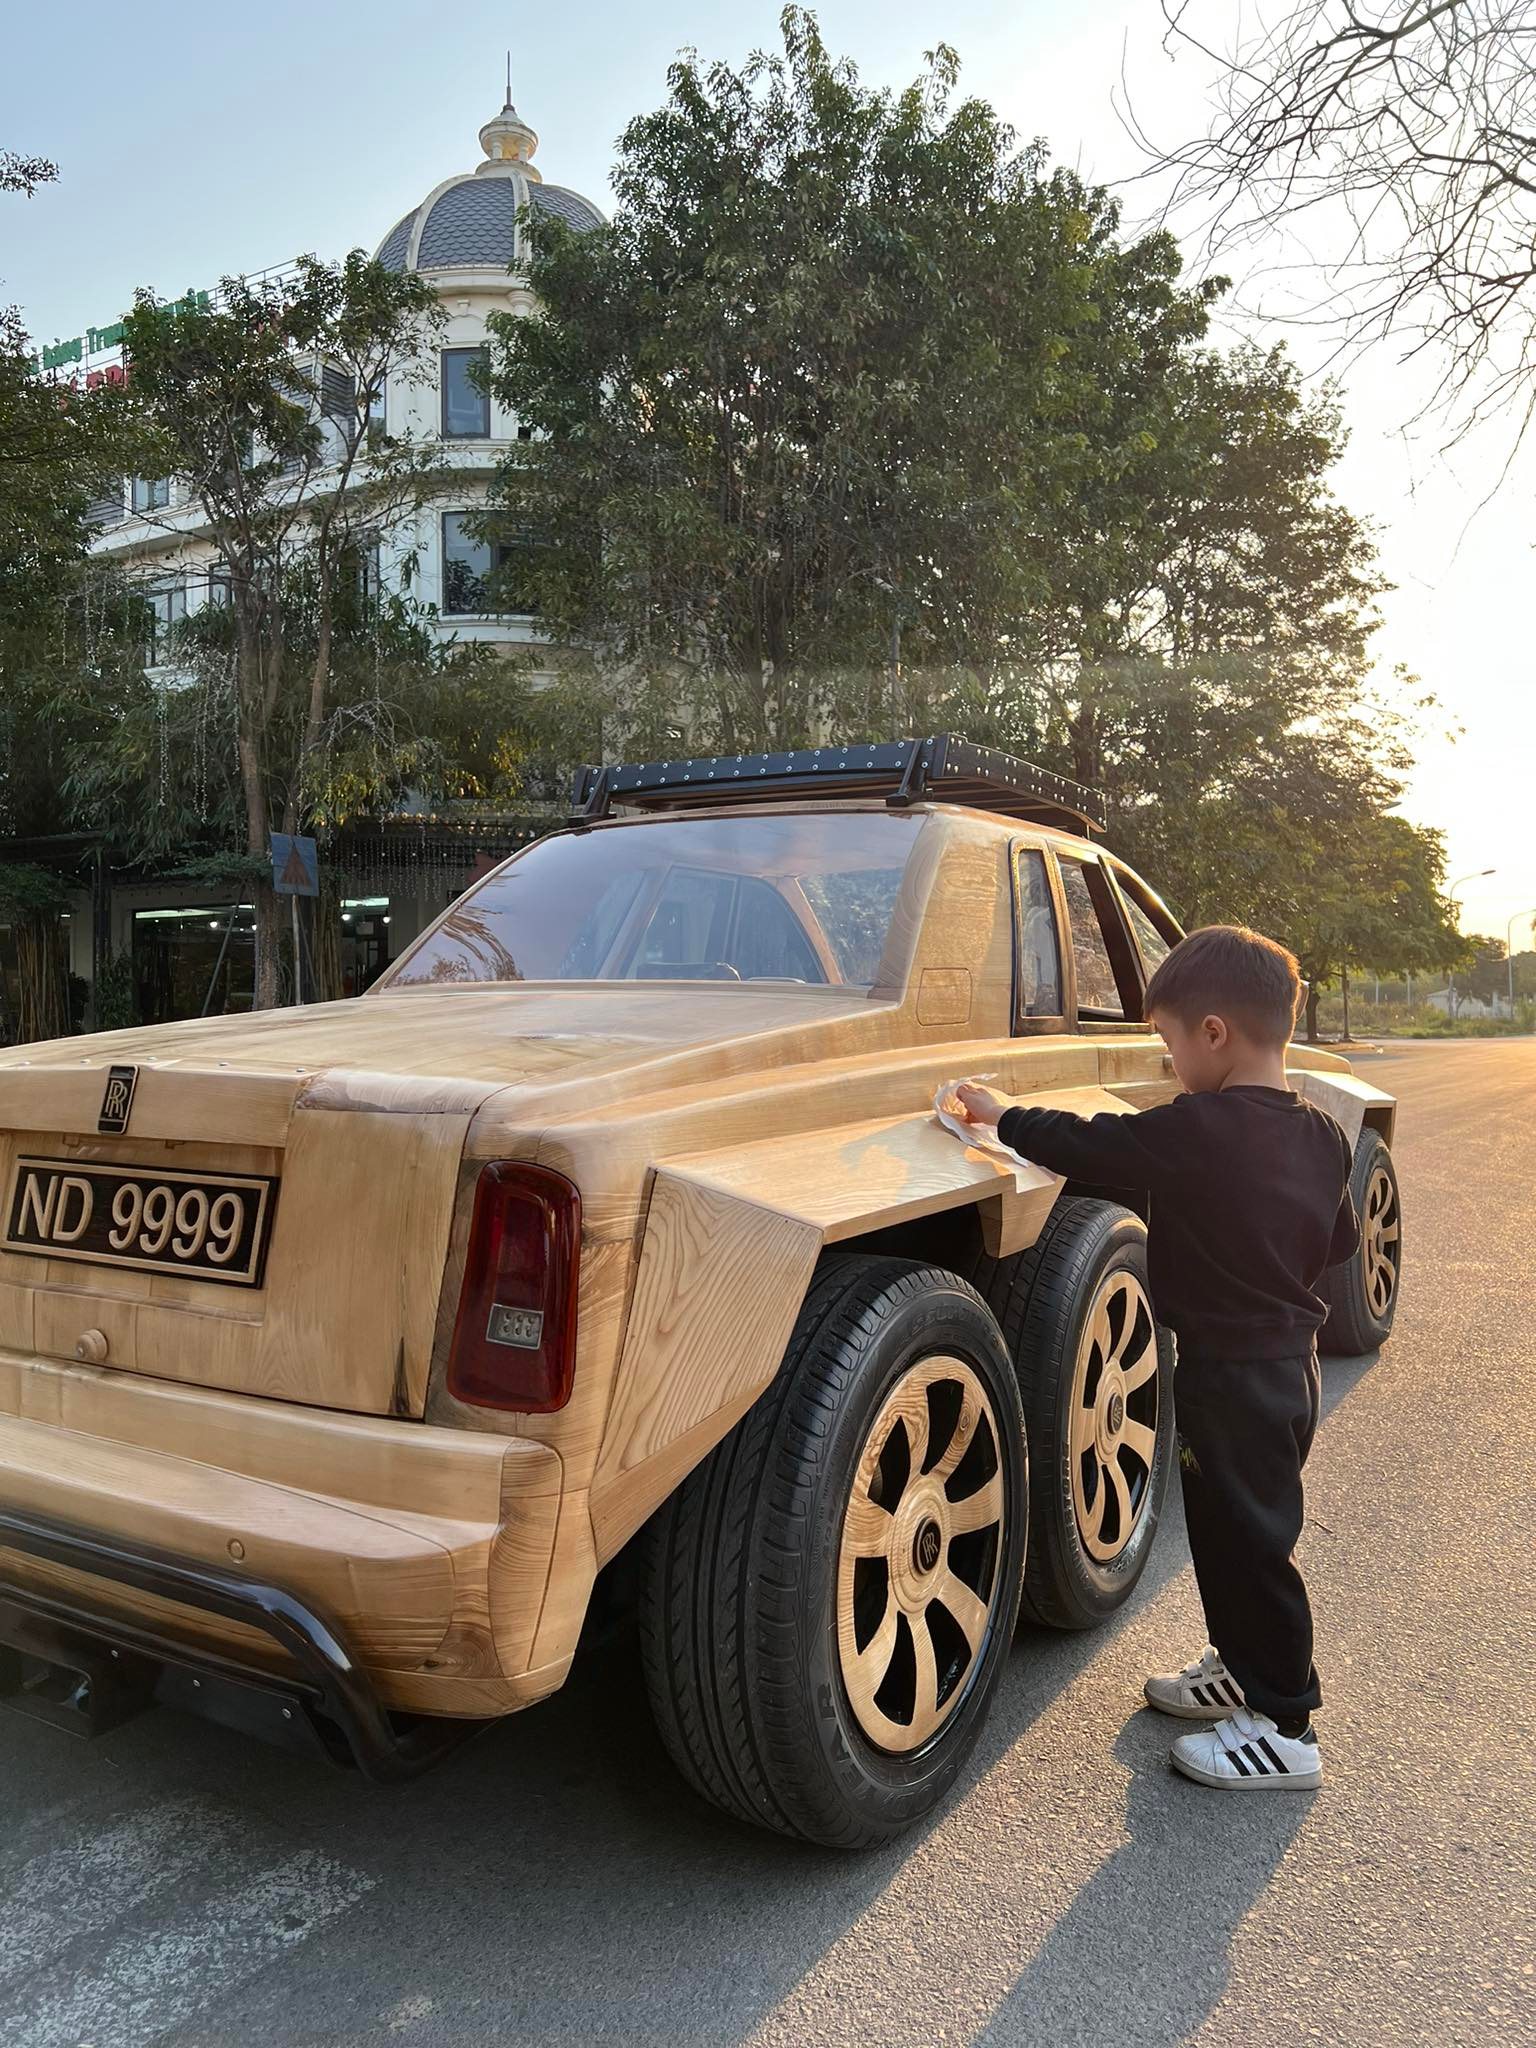 9X Bắc Ninh tự chế Rolls-Royce 6 bánh: To như ô tô thật, tốn khoảng 350 triệu đồng - Ảnh 3.